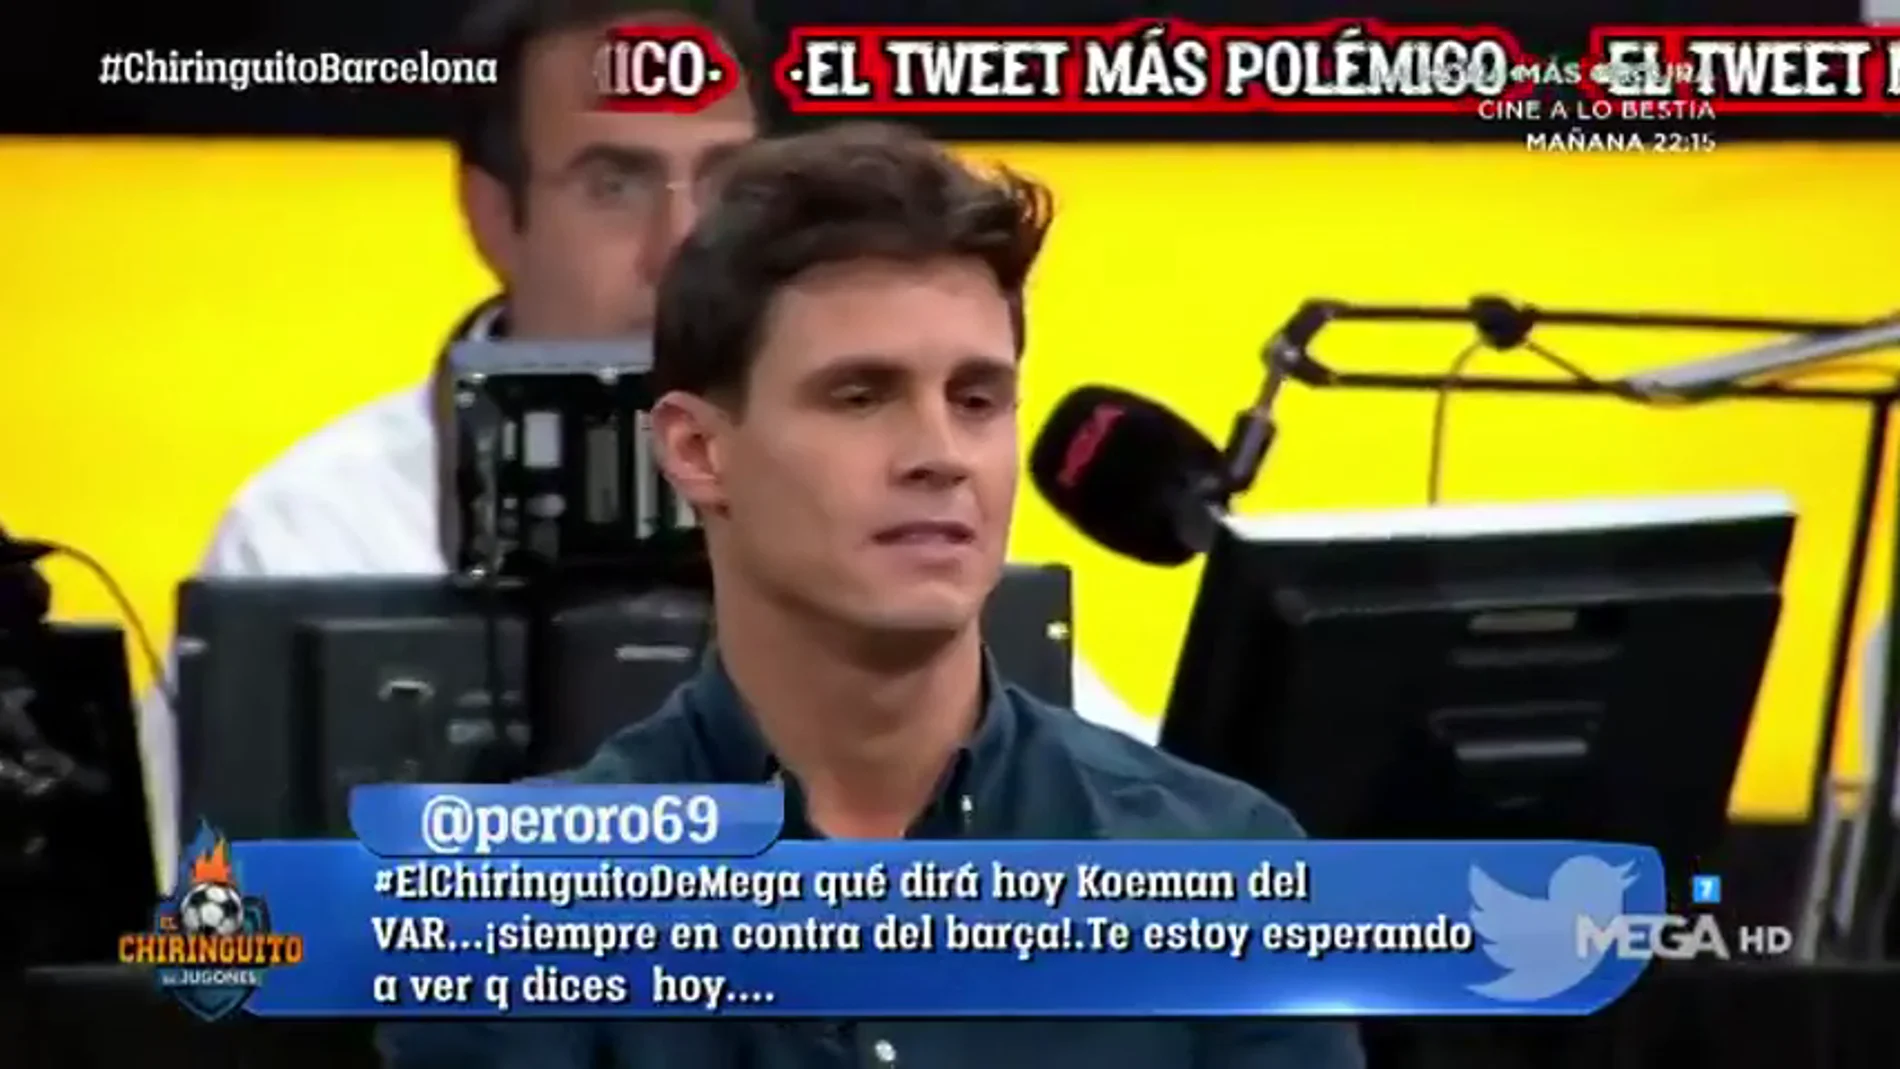 El enfado de Edu Aguirre por el tweet del Barça sobre Cristiano y Messi: "Es lamentable"